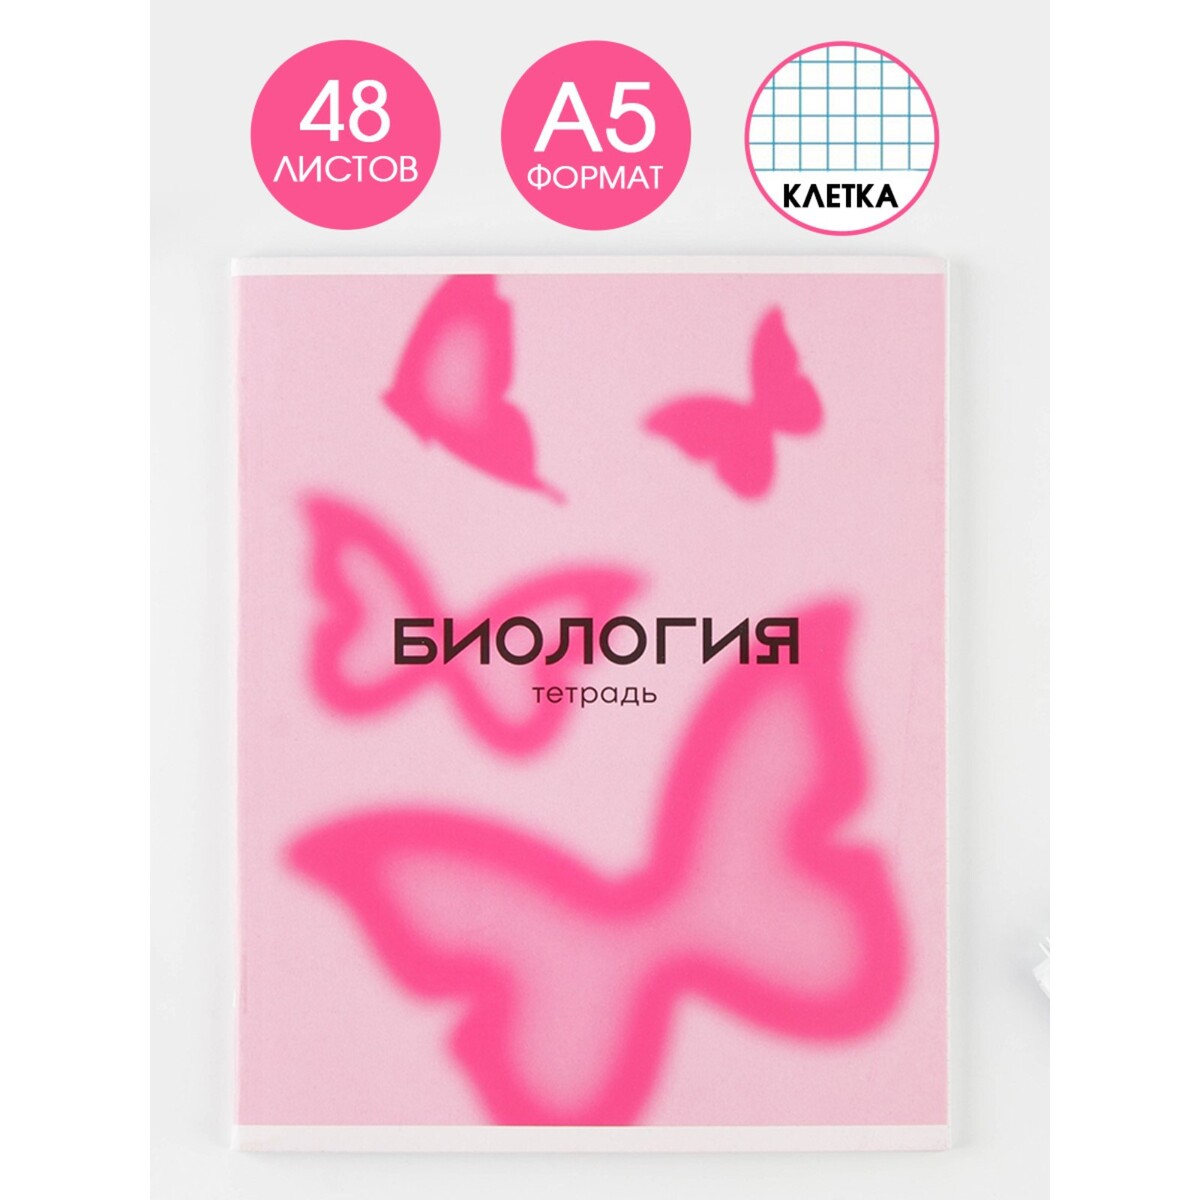 Тетрадь предметная 48 листов, а5, розовая серия, со справ. мат.